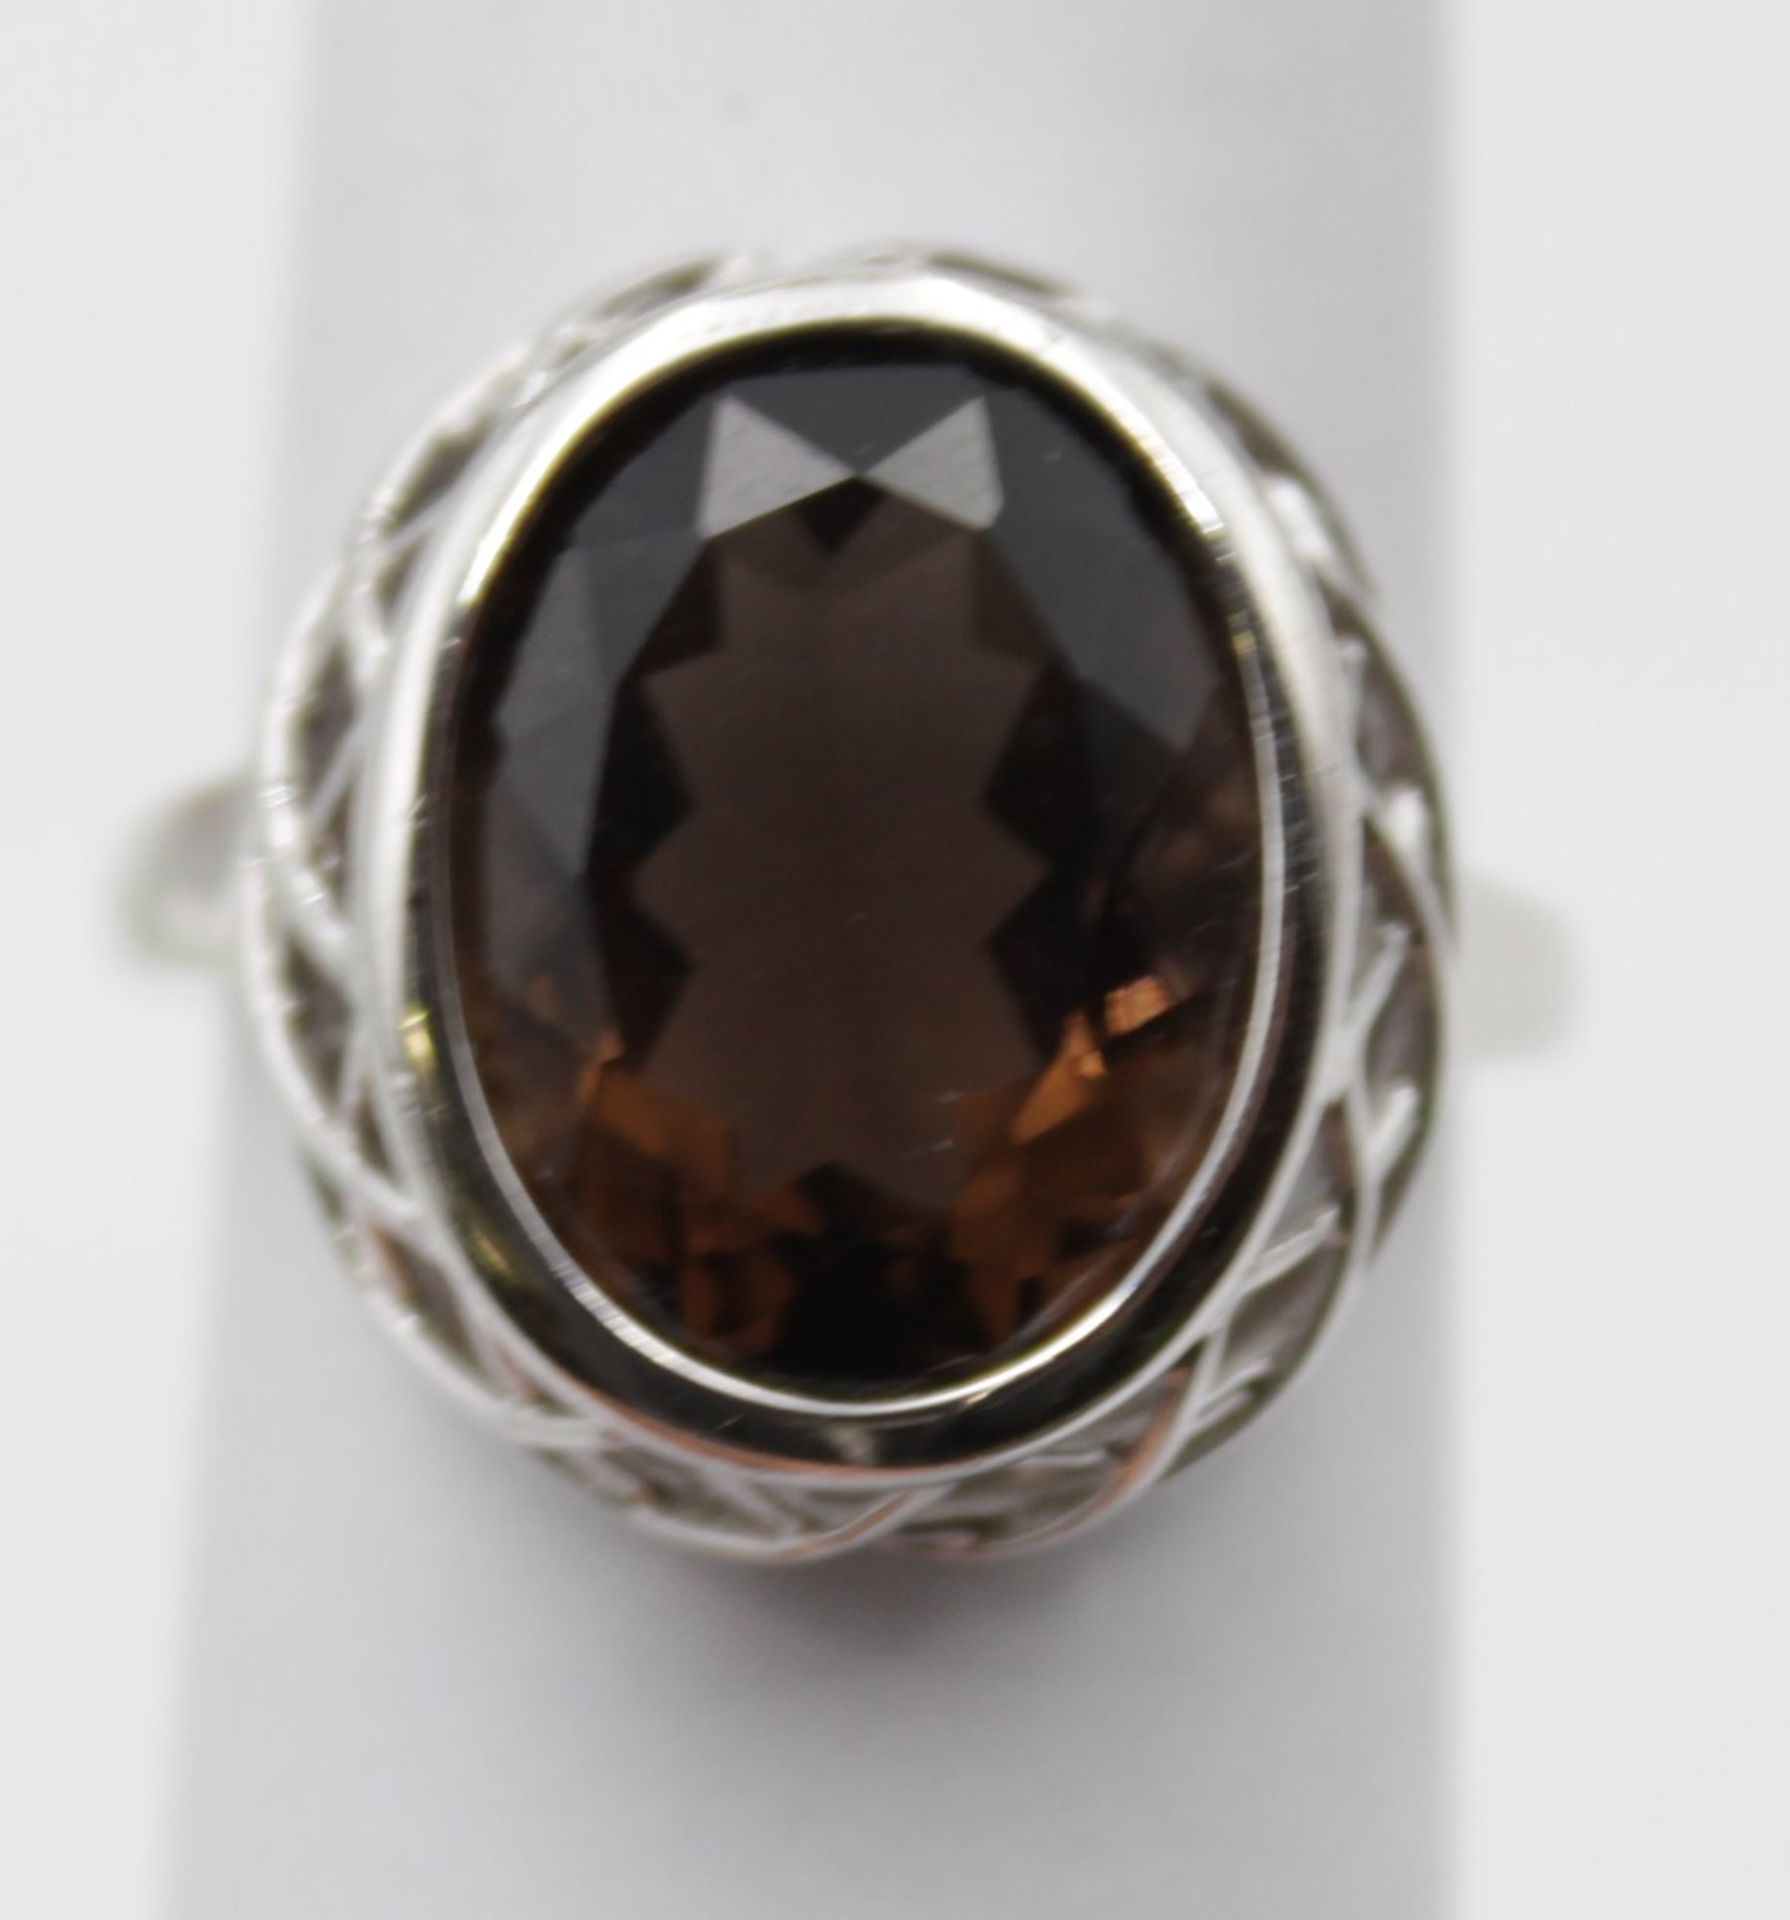 925er Silber-Ring, facc. brauner Stein, ca. 6,5gr.m, RG 59 - Bild 3 aus 5